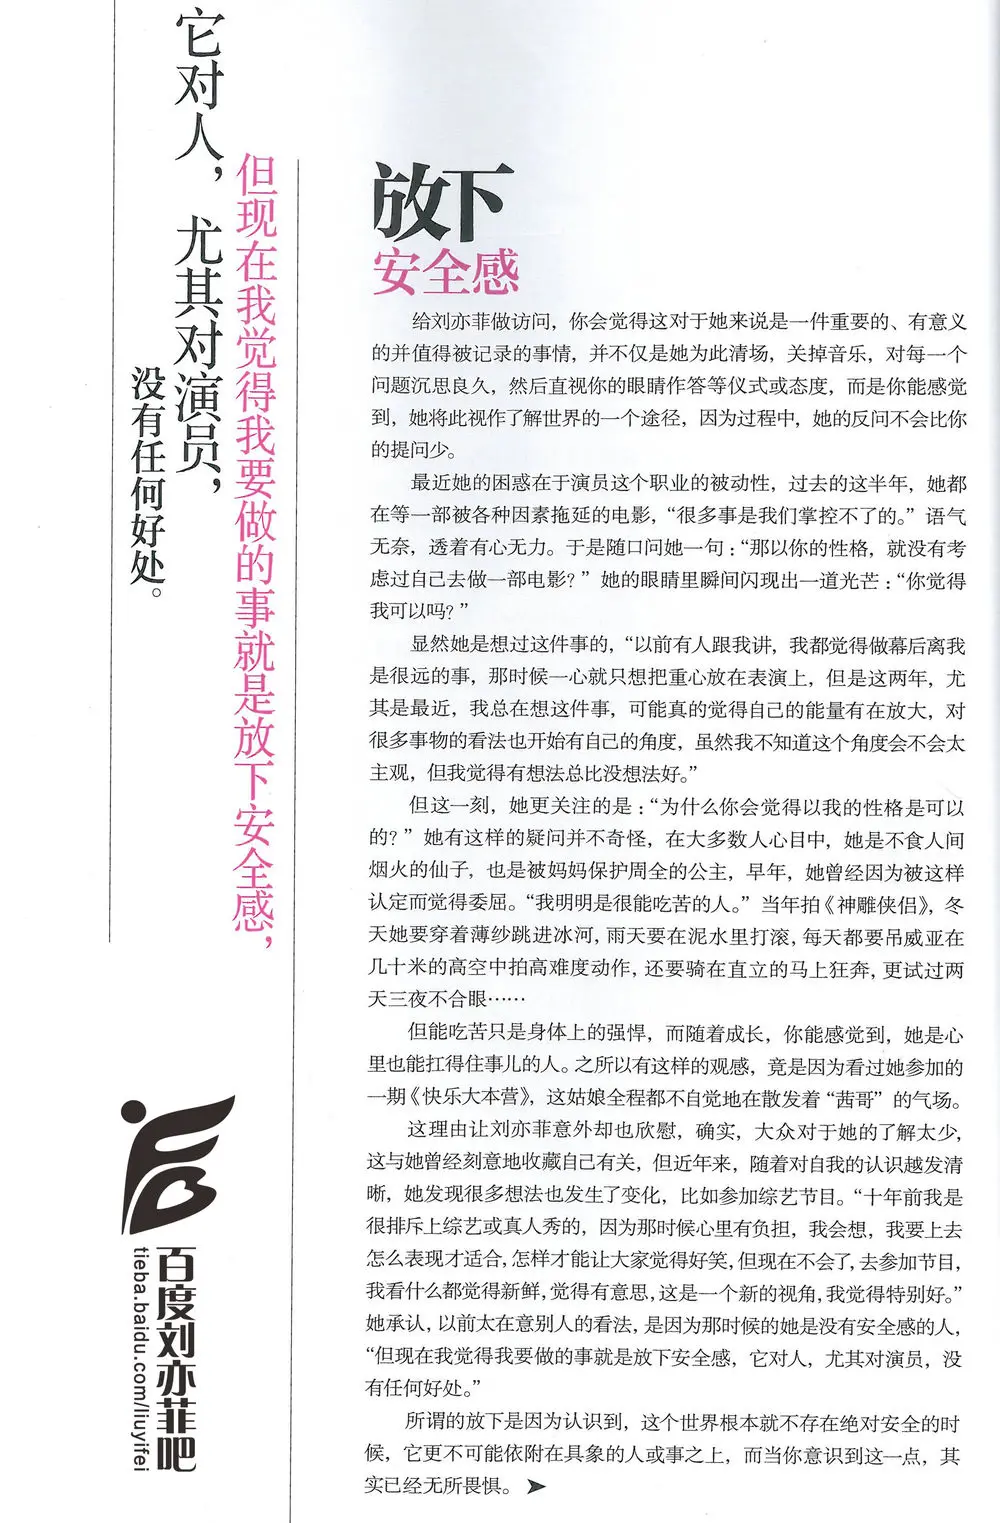 《芭莎珠宝》12月刊内页文字扫描版  《刘亦菲》[2015.12.14]